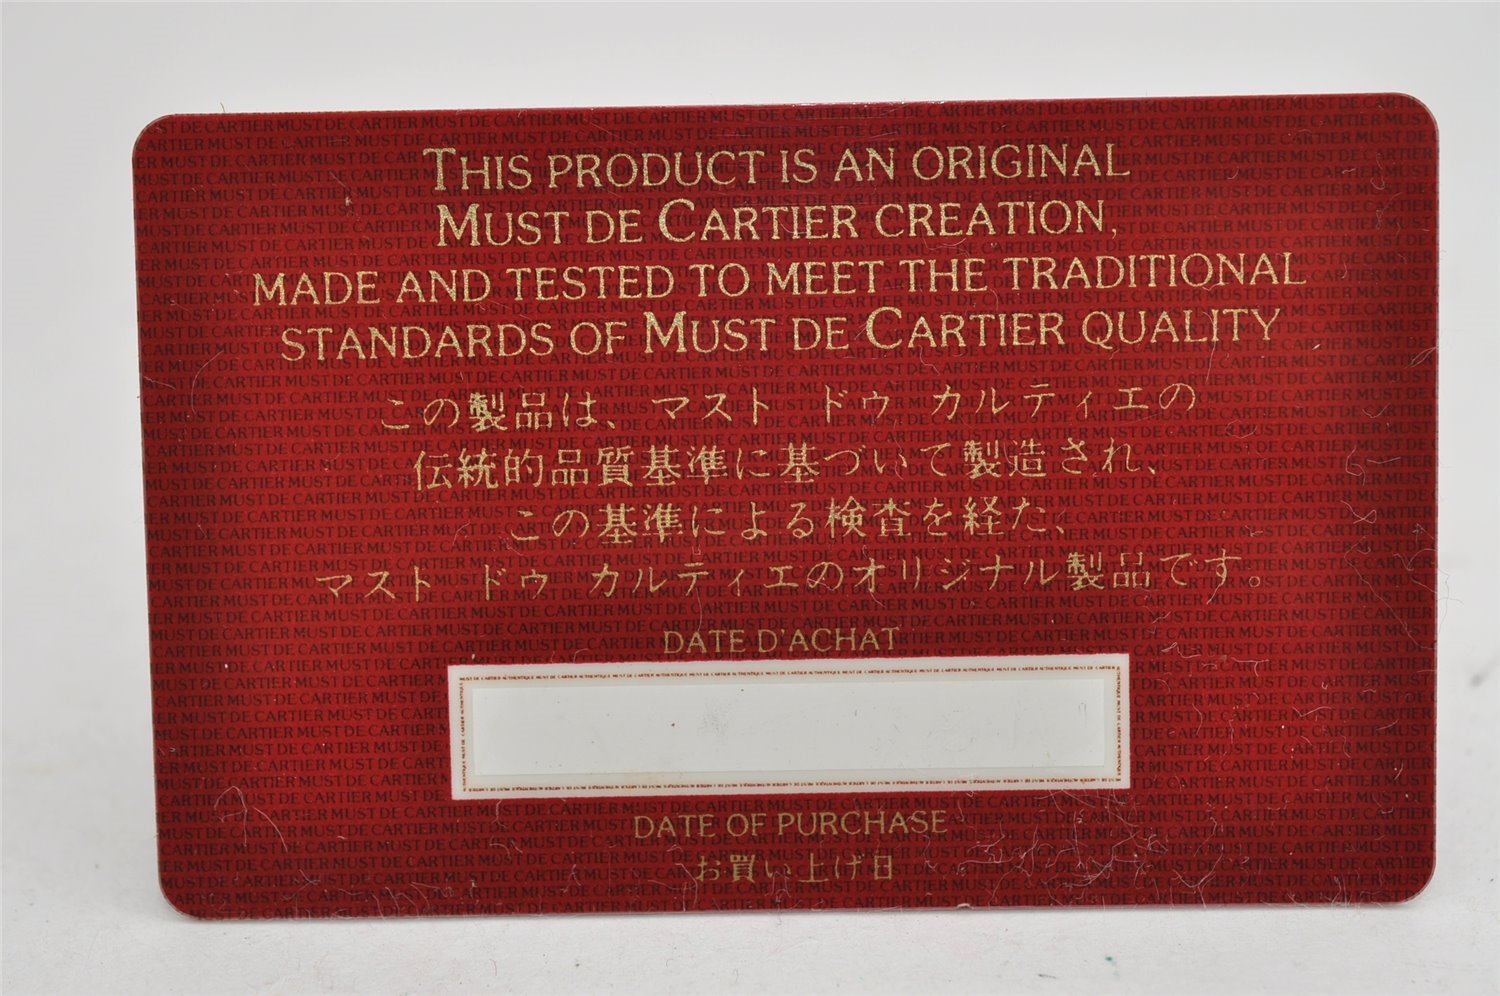 Authentic Cartier Must de Cartier Hand Boston Bag Leather Bordeaux Red 3214I